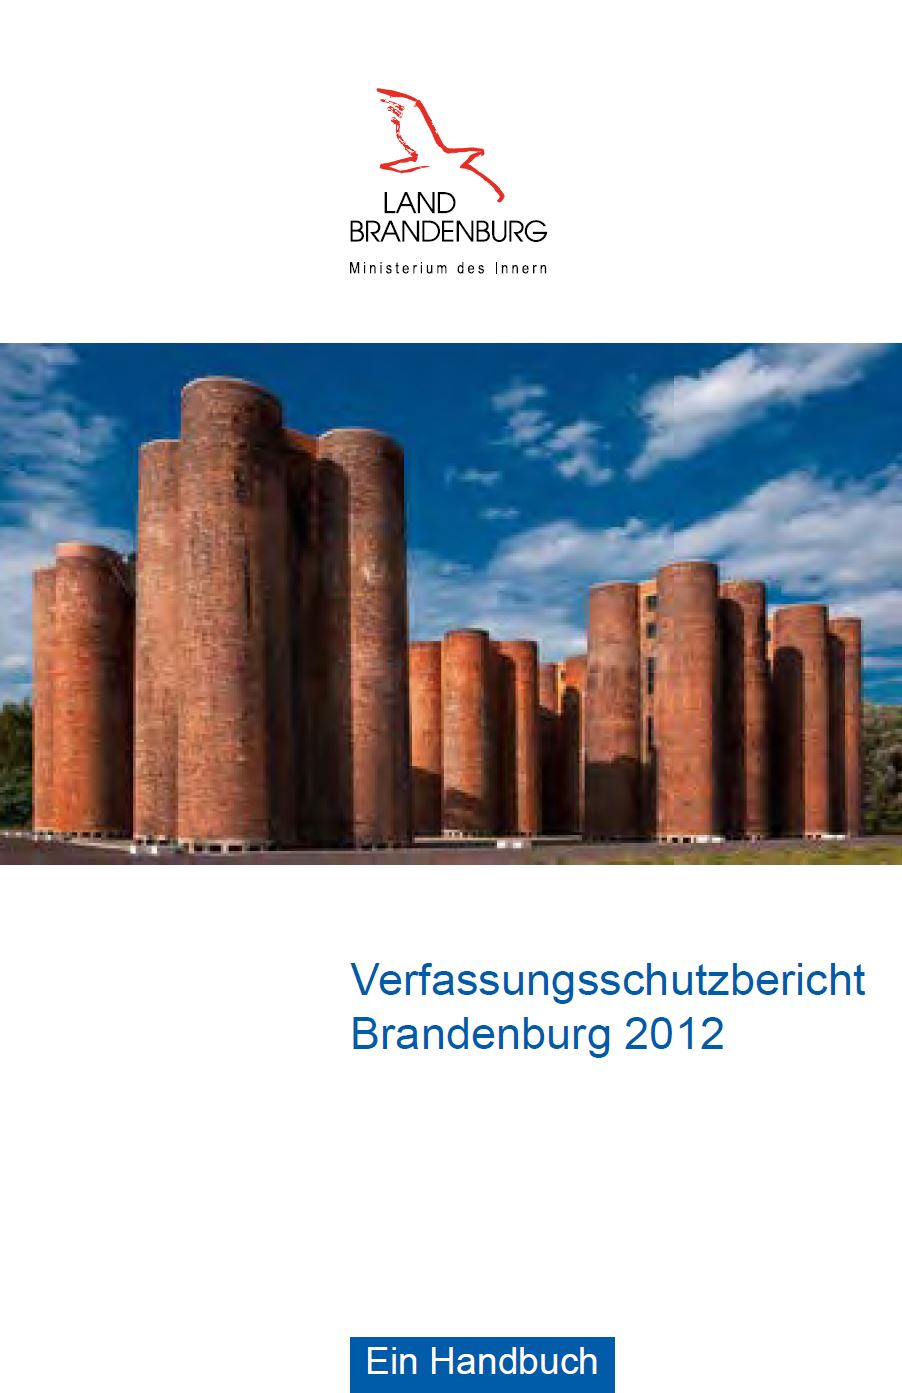 Bild vergrößern (Bild: Verfassungsschutzbericht 2012)